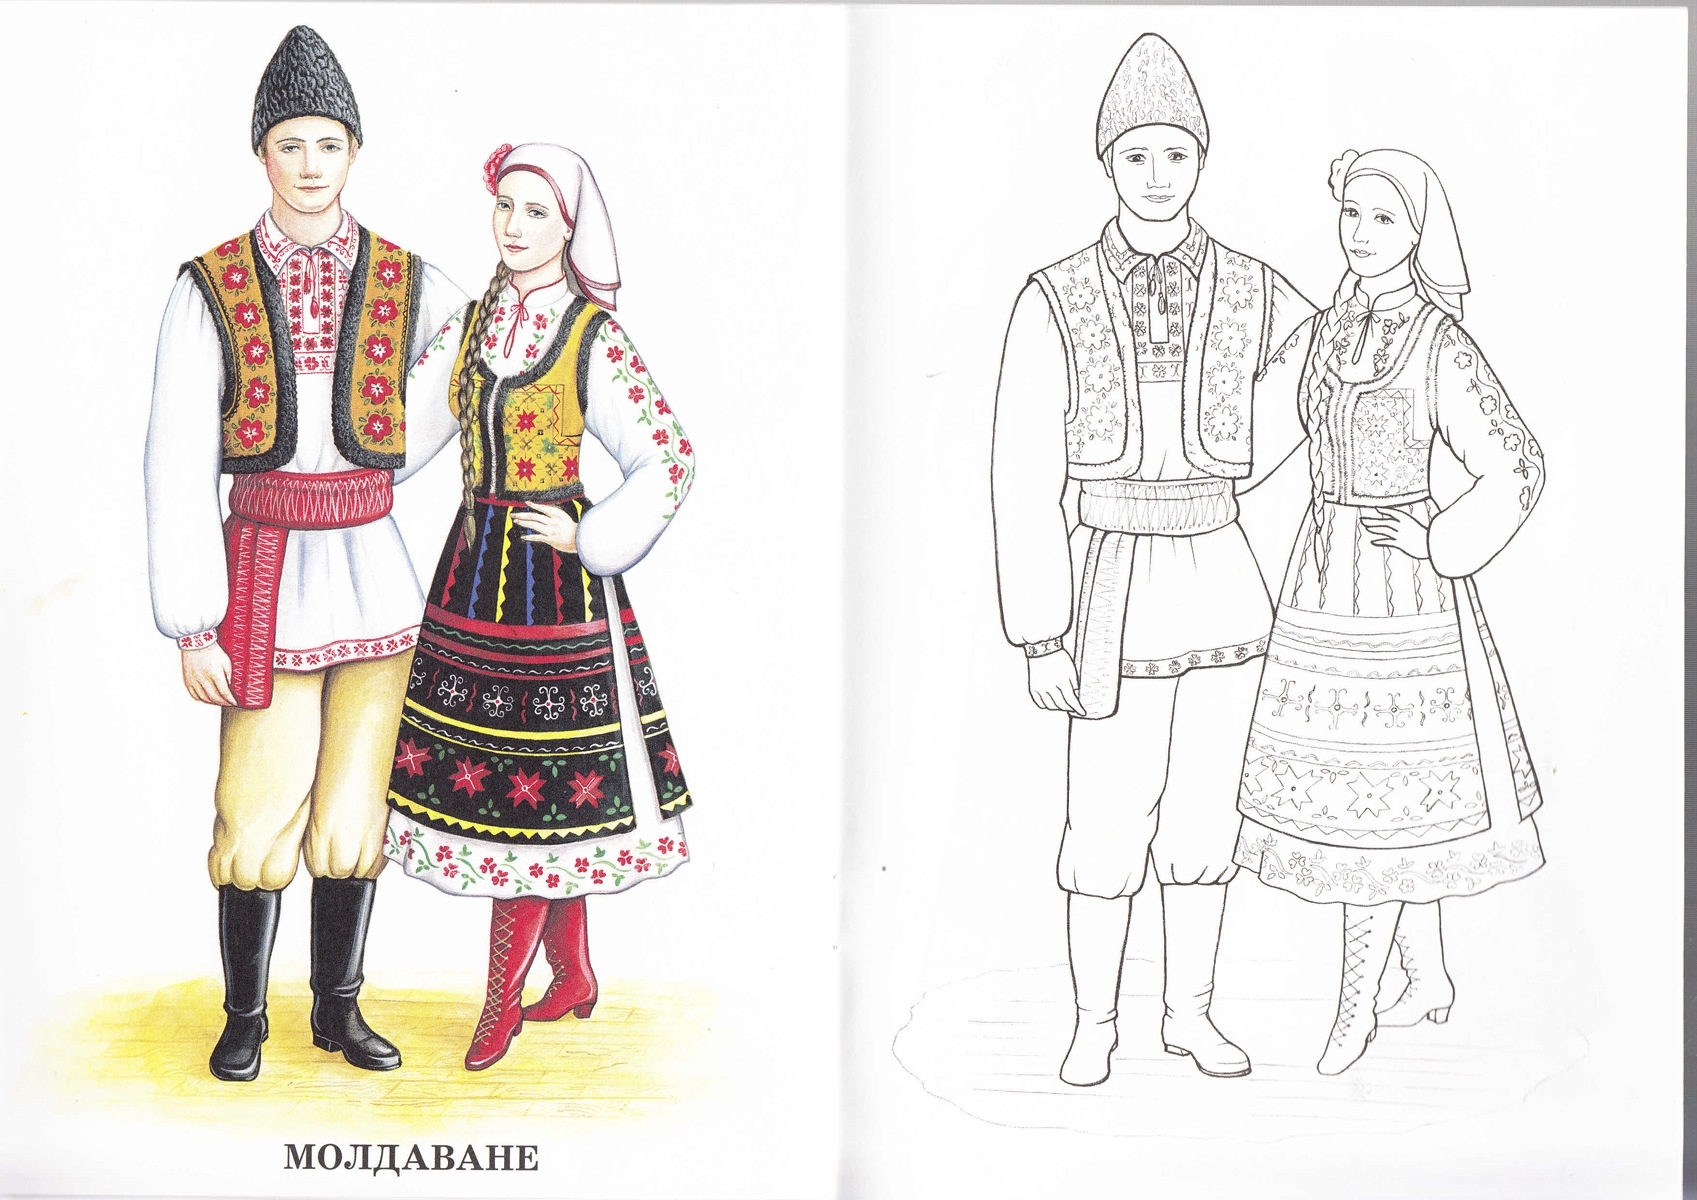 Мордовский национальный костюм раскраска